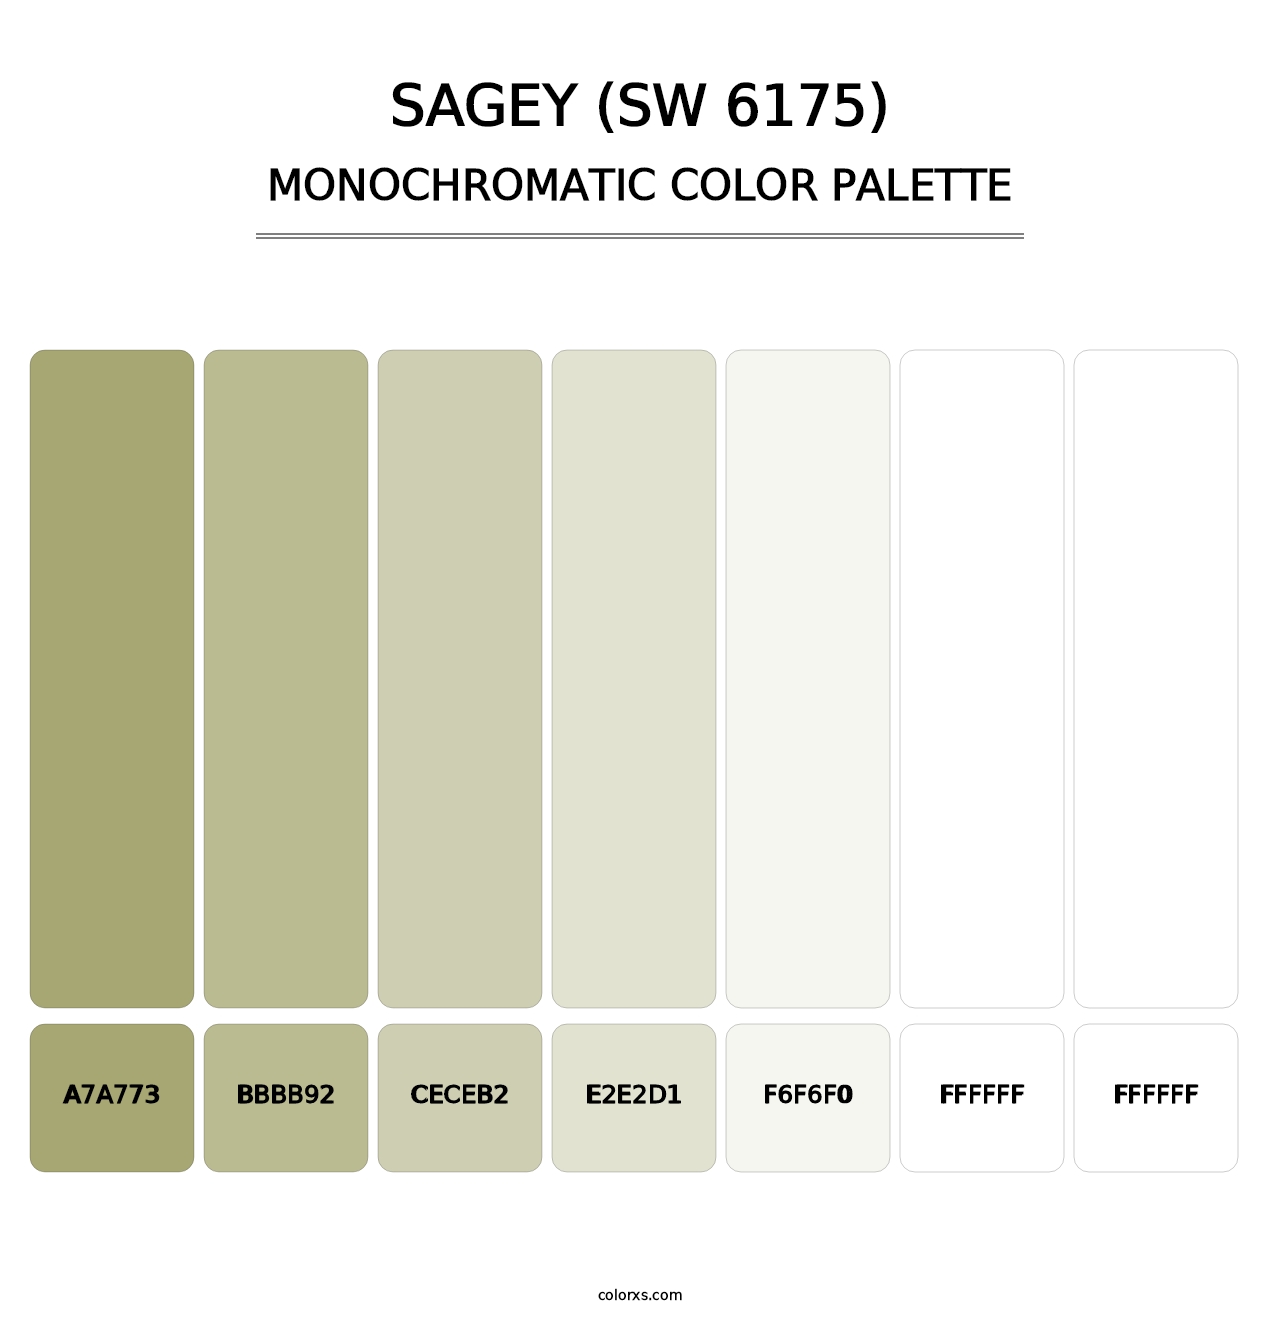 Sagey (SW 6175) - Monochromatic Color Palette